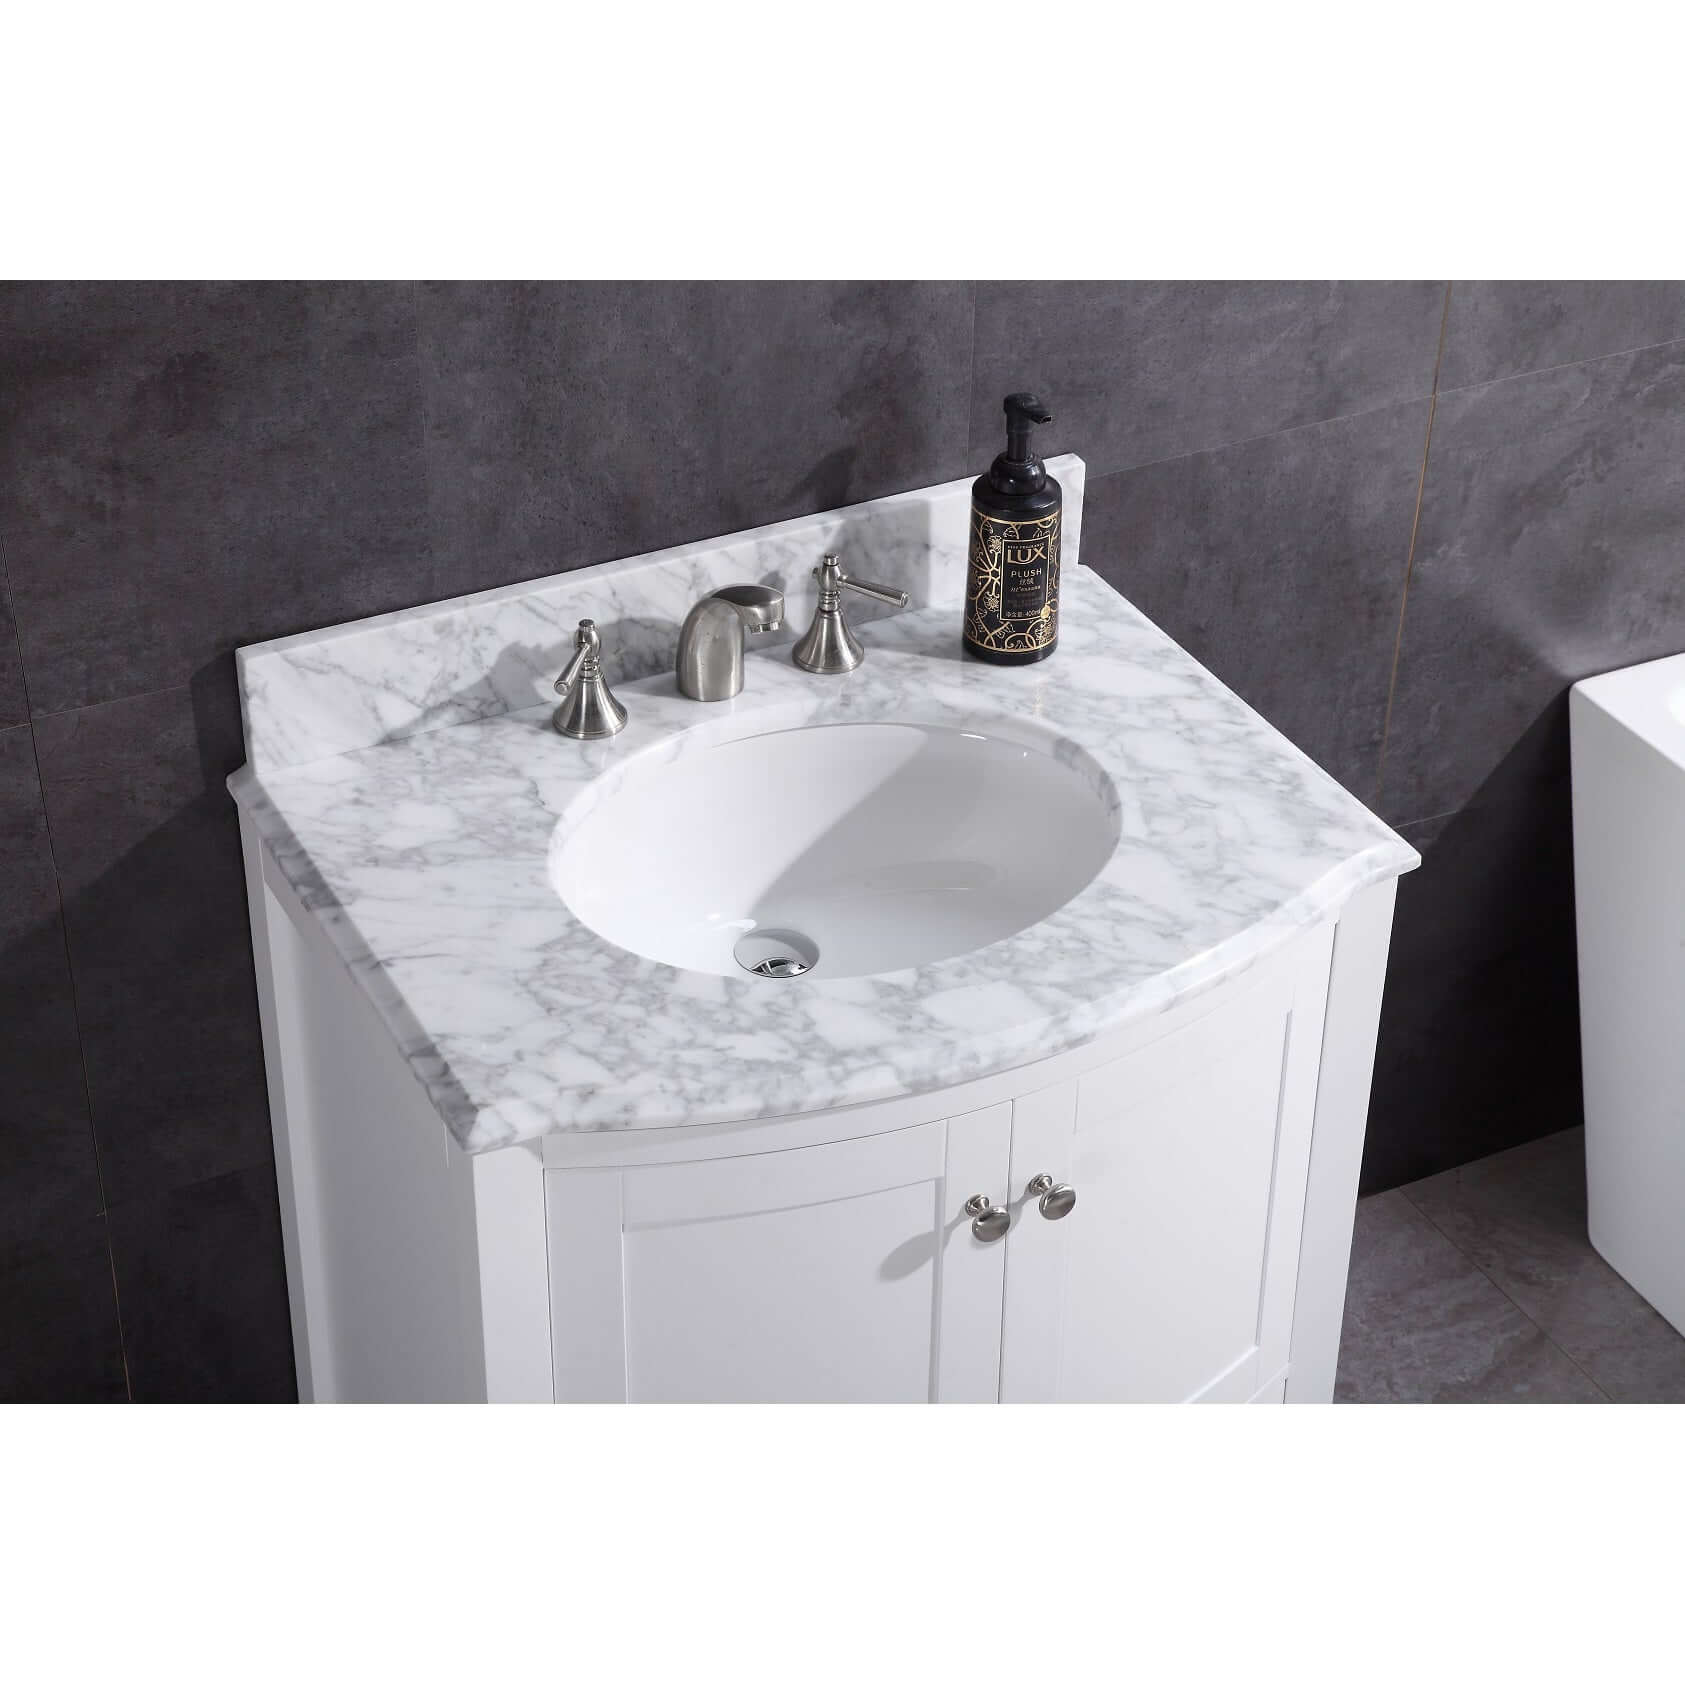 30" White Bathroom Vanity - Pvc - WT9309-30-W-PVC